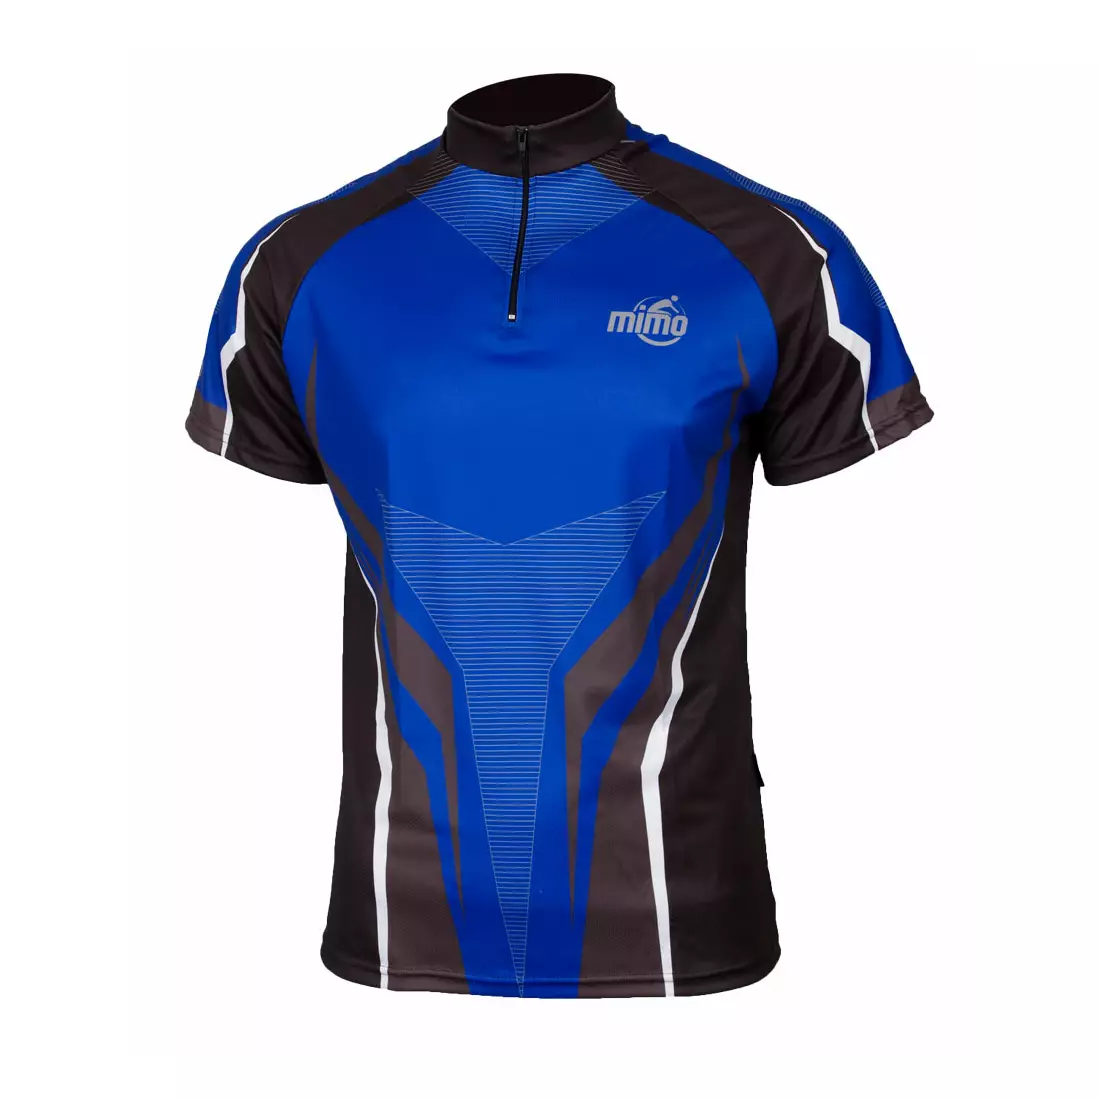 MikeSPORT DESIGN RAVO MTB pánský cyklistický dres, černo-modrý